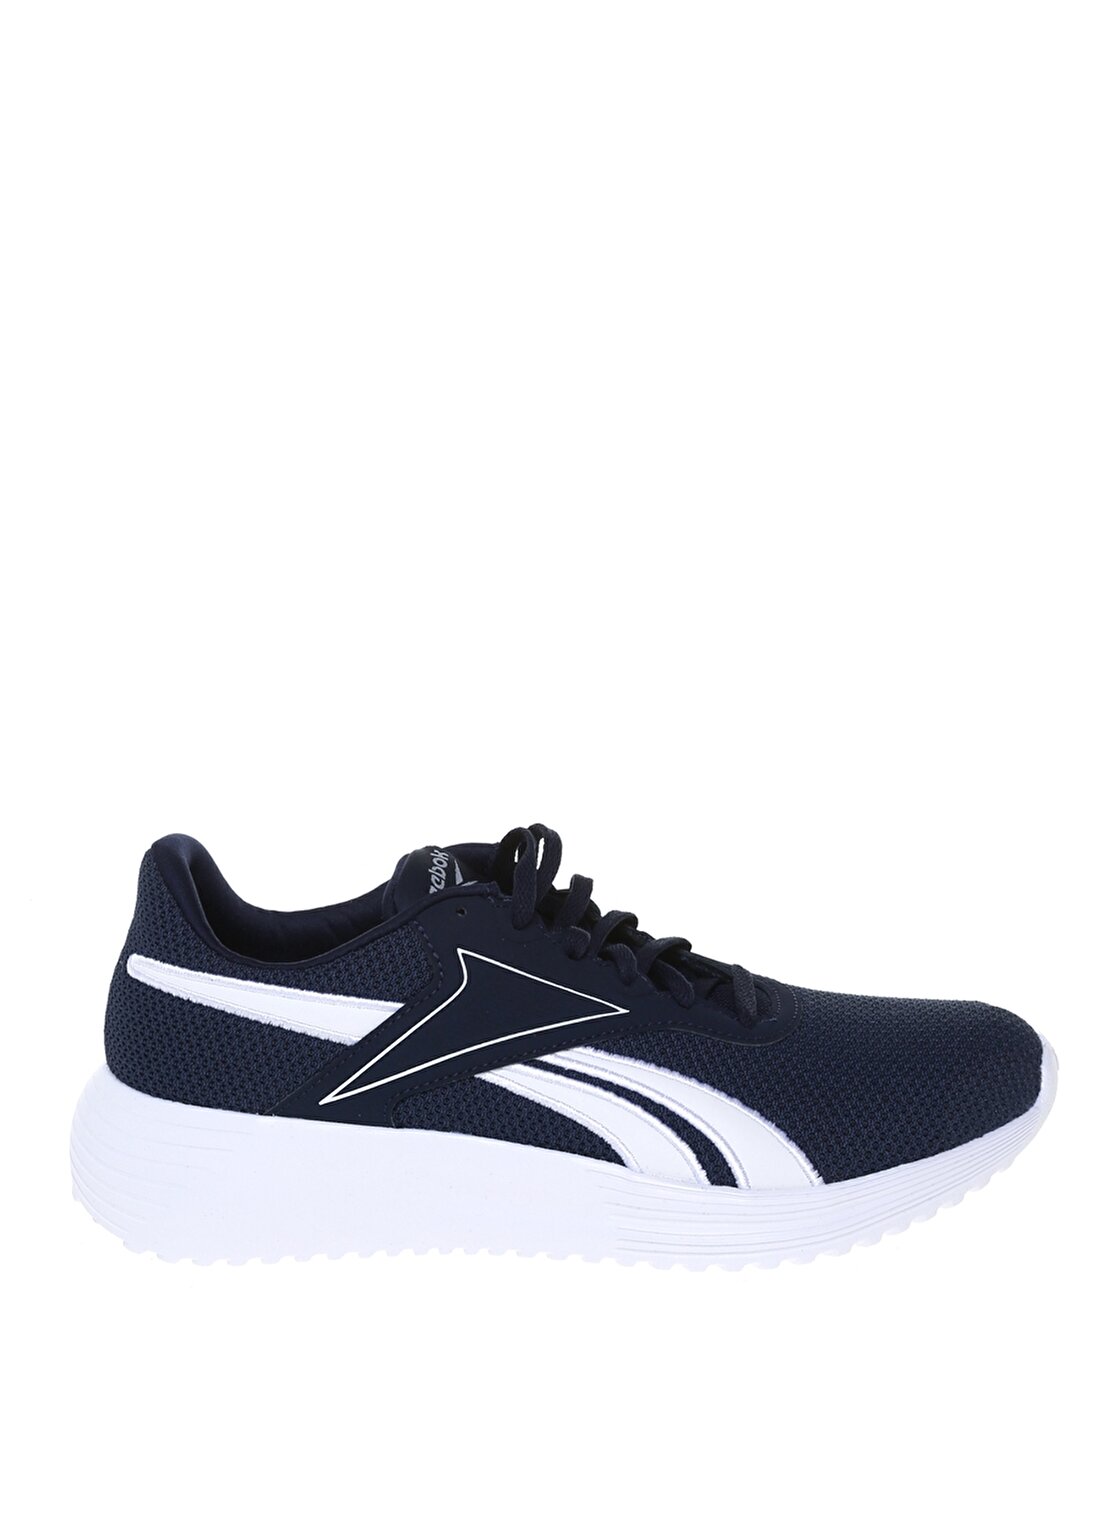 Reebok Lacivert - Beyaz Erkek Koşu Ayakkabısı H00885 REEBOK LITE 3.0